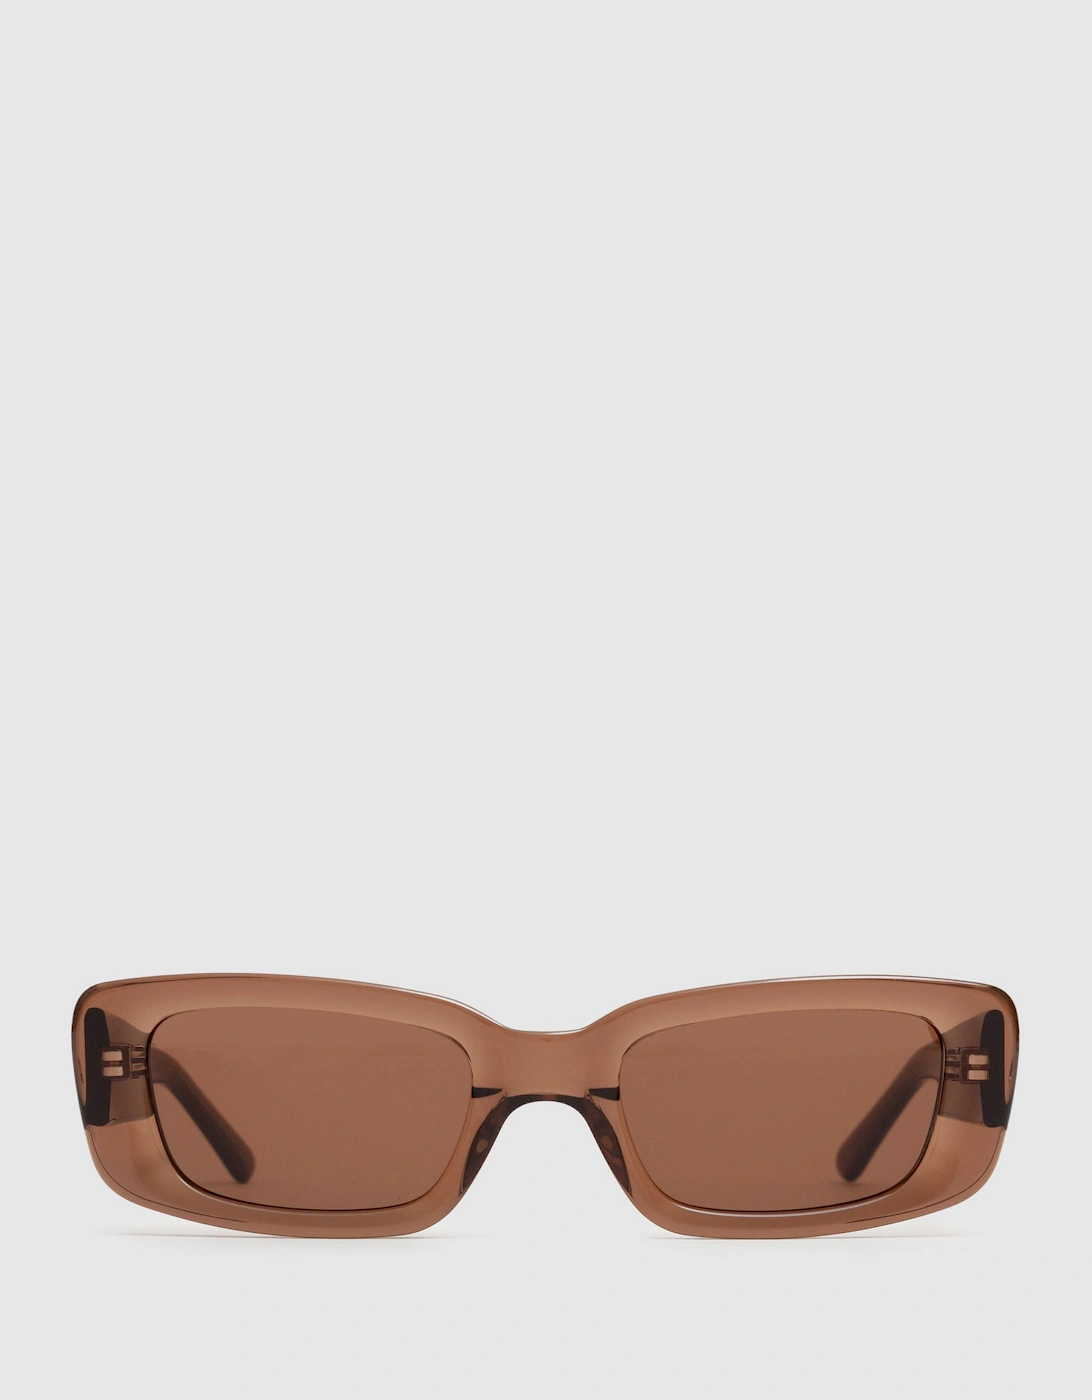 DMY Studios Transparent Rectangular Sunglasses, 2 of 1